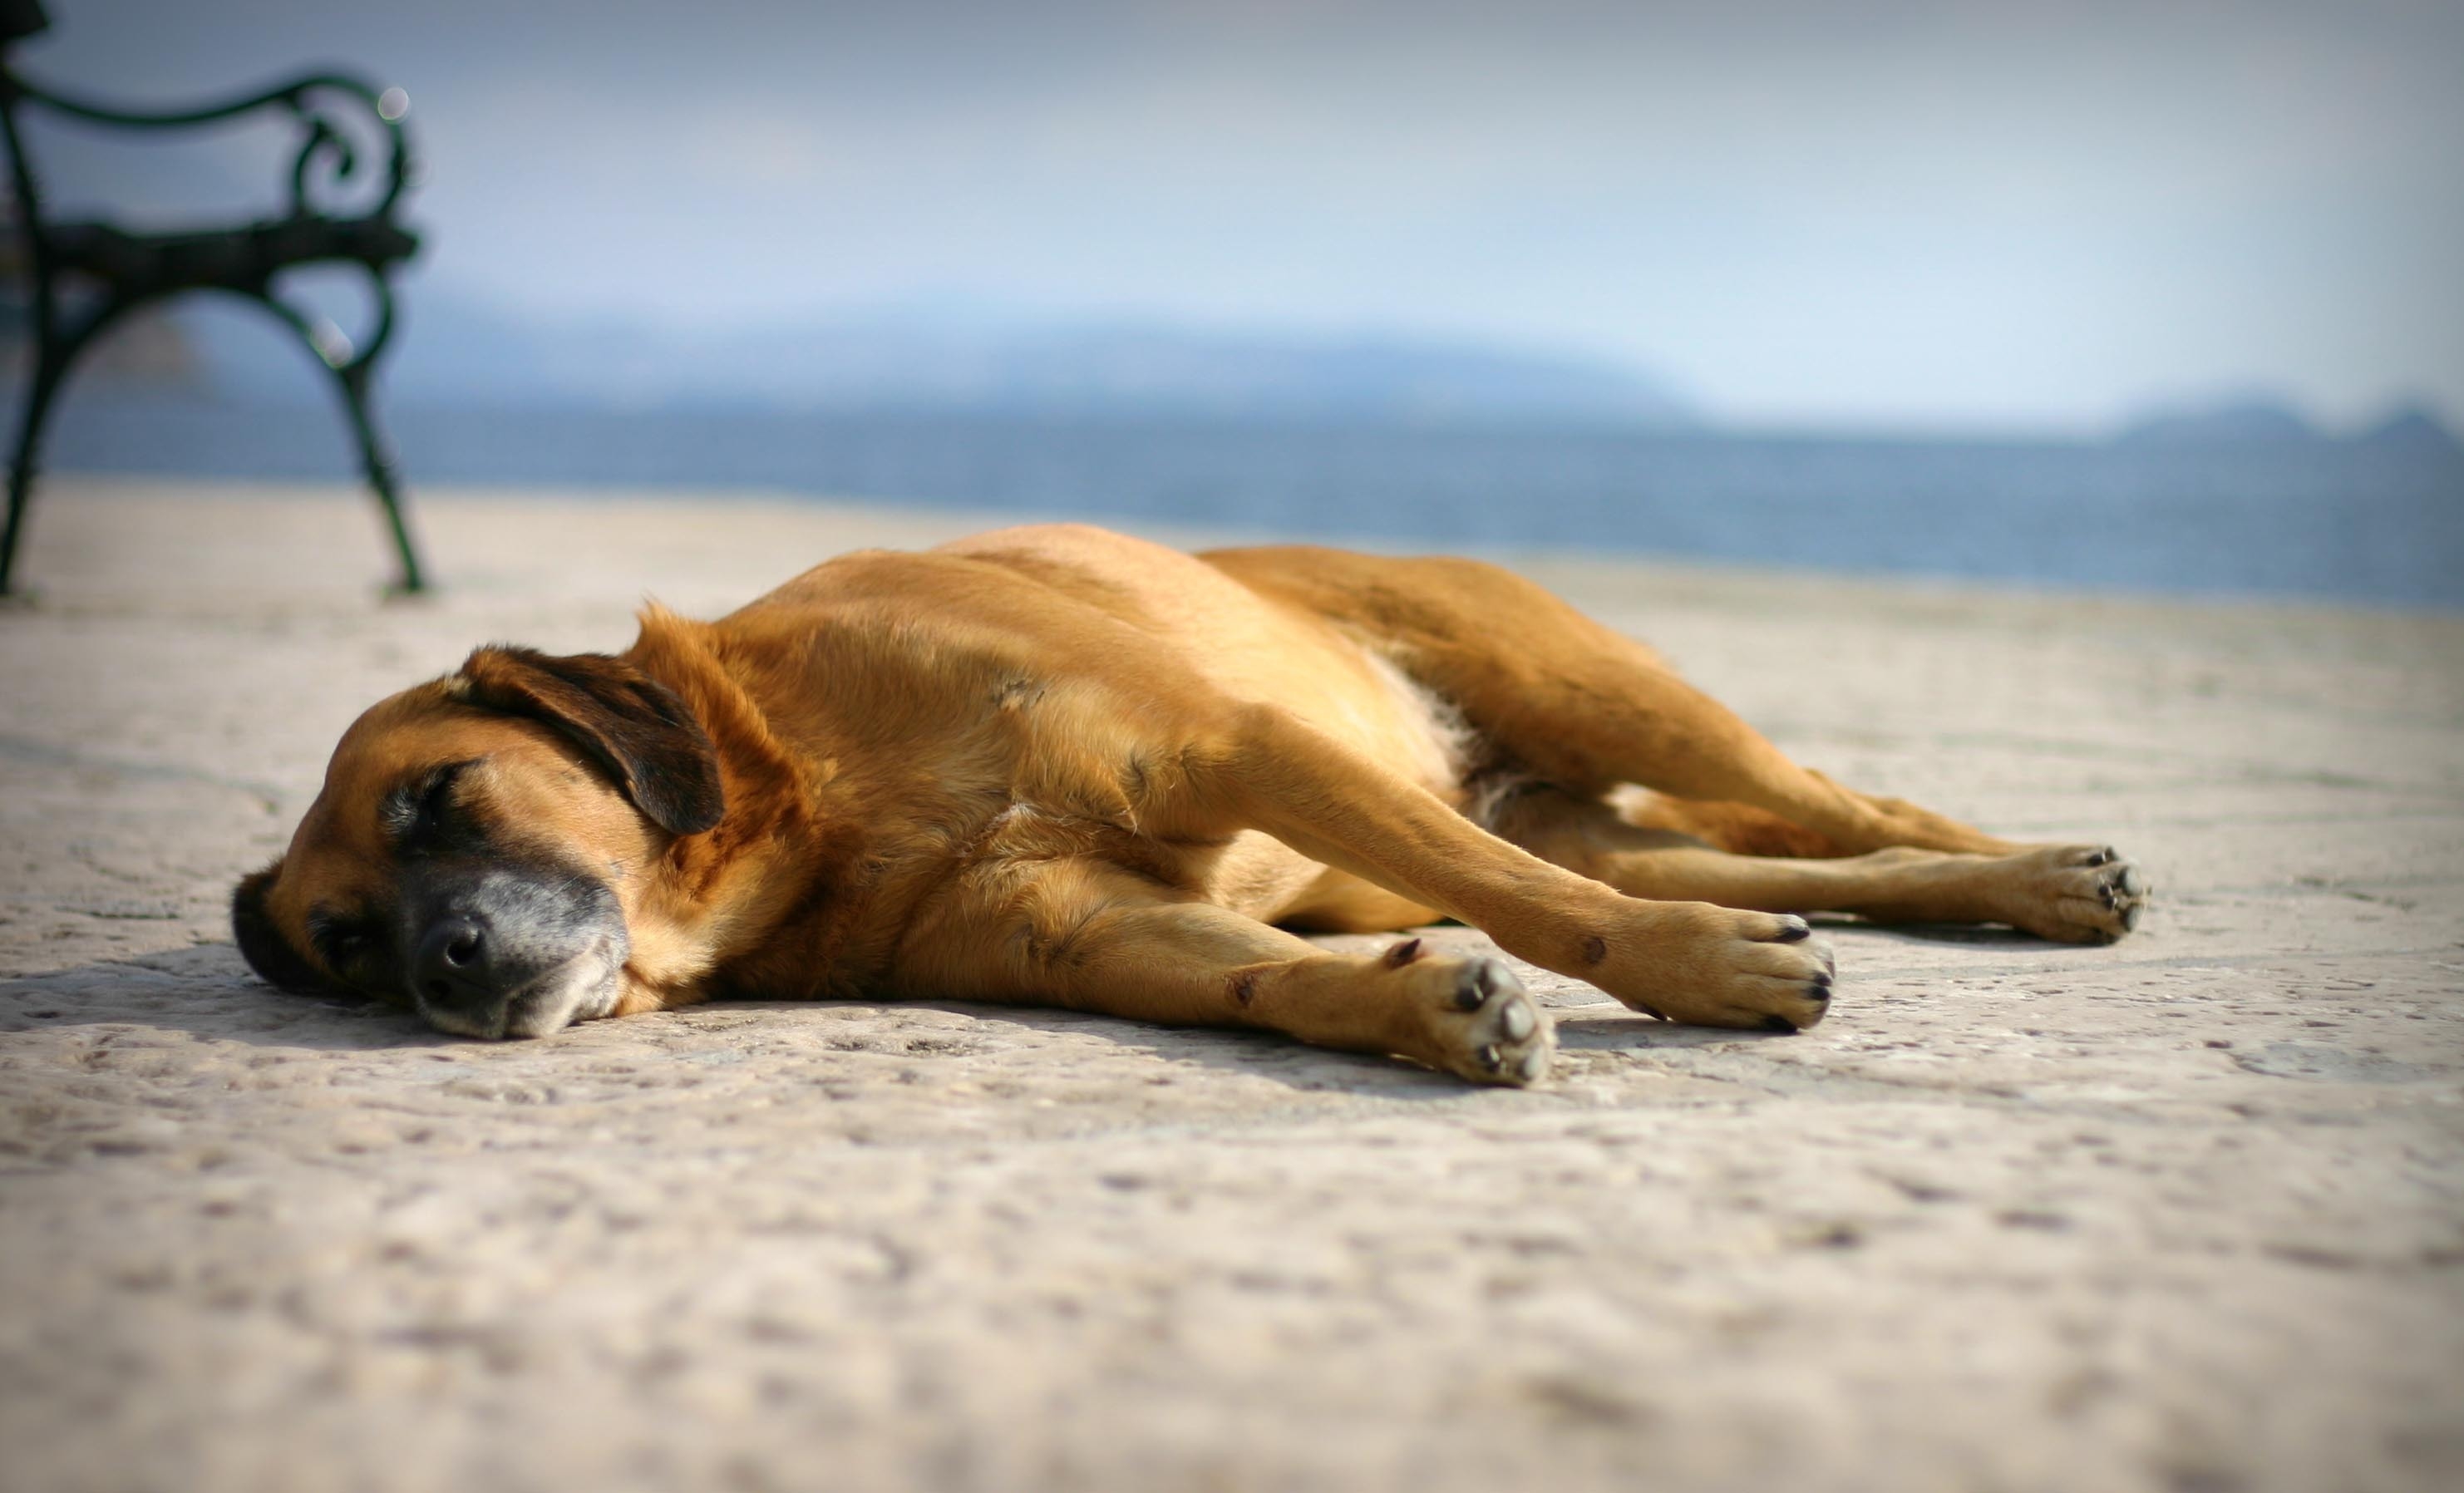 animals, sand, to lie down, lie, dog, sleep, dream Free Stock Photo